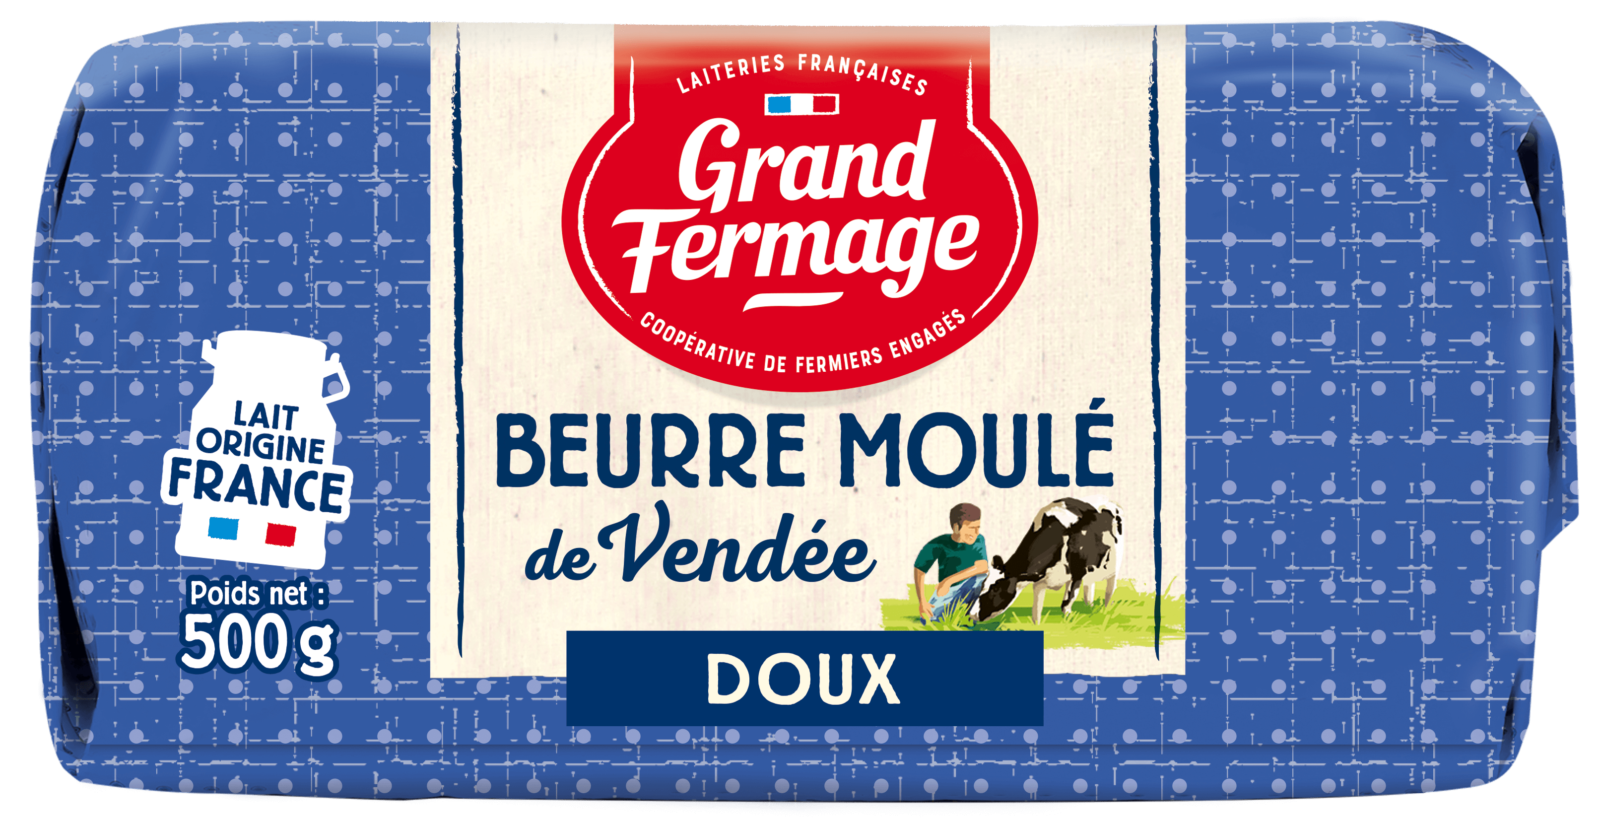 Beurre doux Belleville-sur-Vie spécial pâtisserie - Grand Fermage